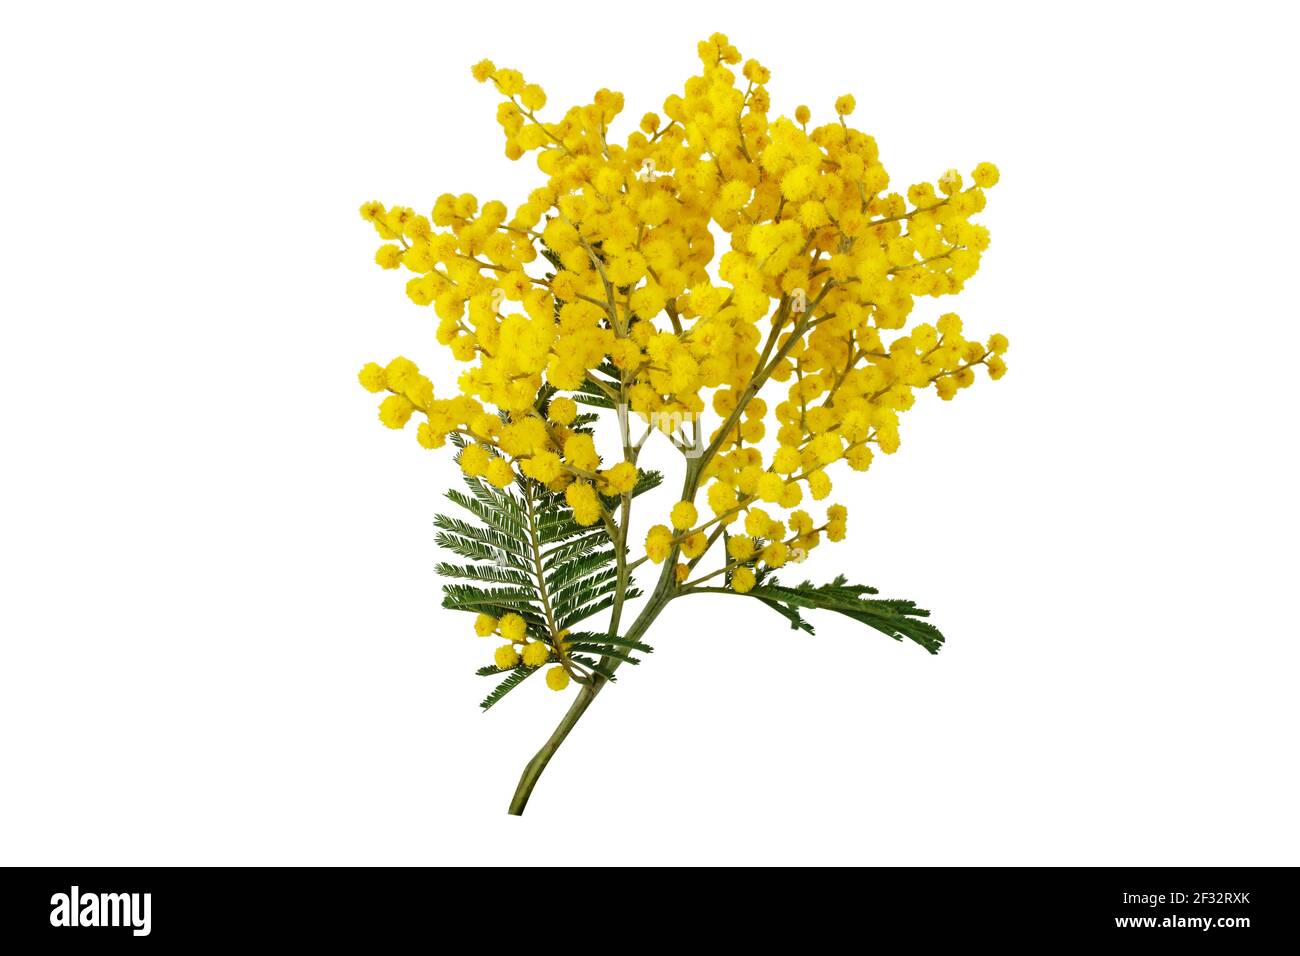 Branche argentée isolée sur blanc. Fleurs de printemps Mimosa. Feuilles et billes molletonnées jaune en acacia dealbata. Banque D'Images